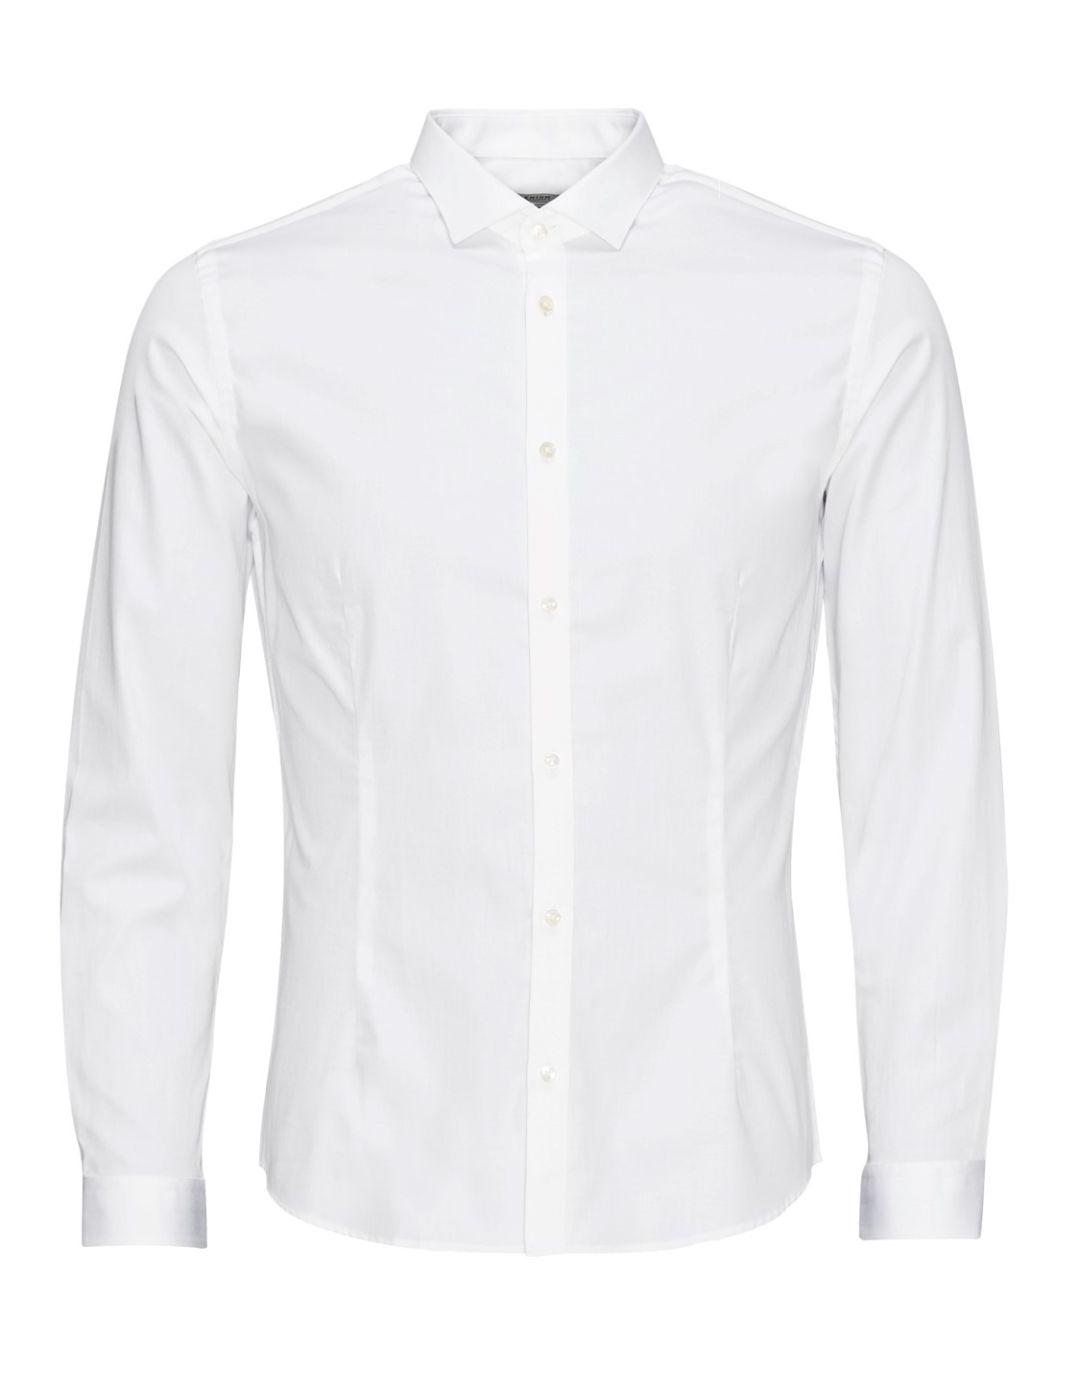 Camisa Jack&Jones Parma Noos blanca para hombre-&